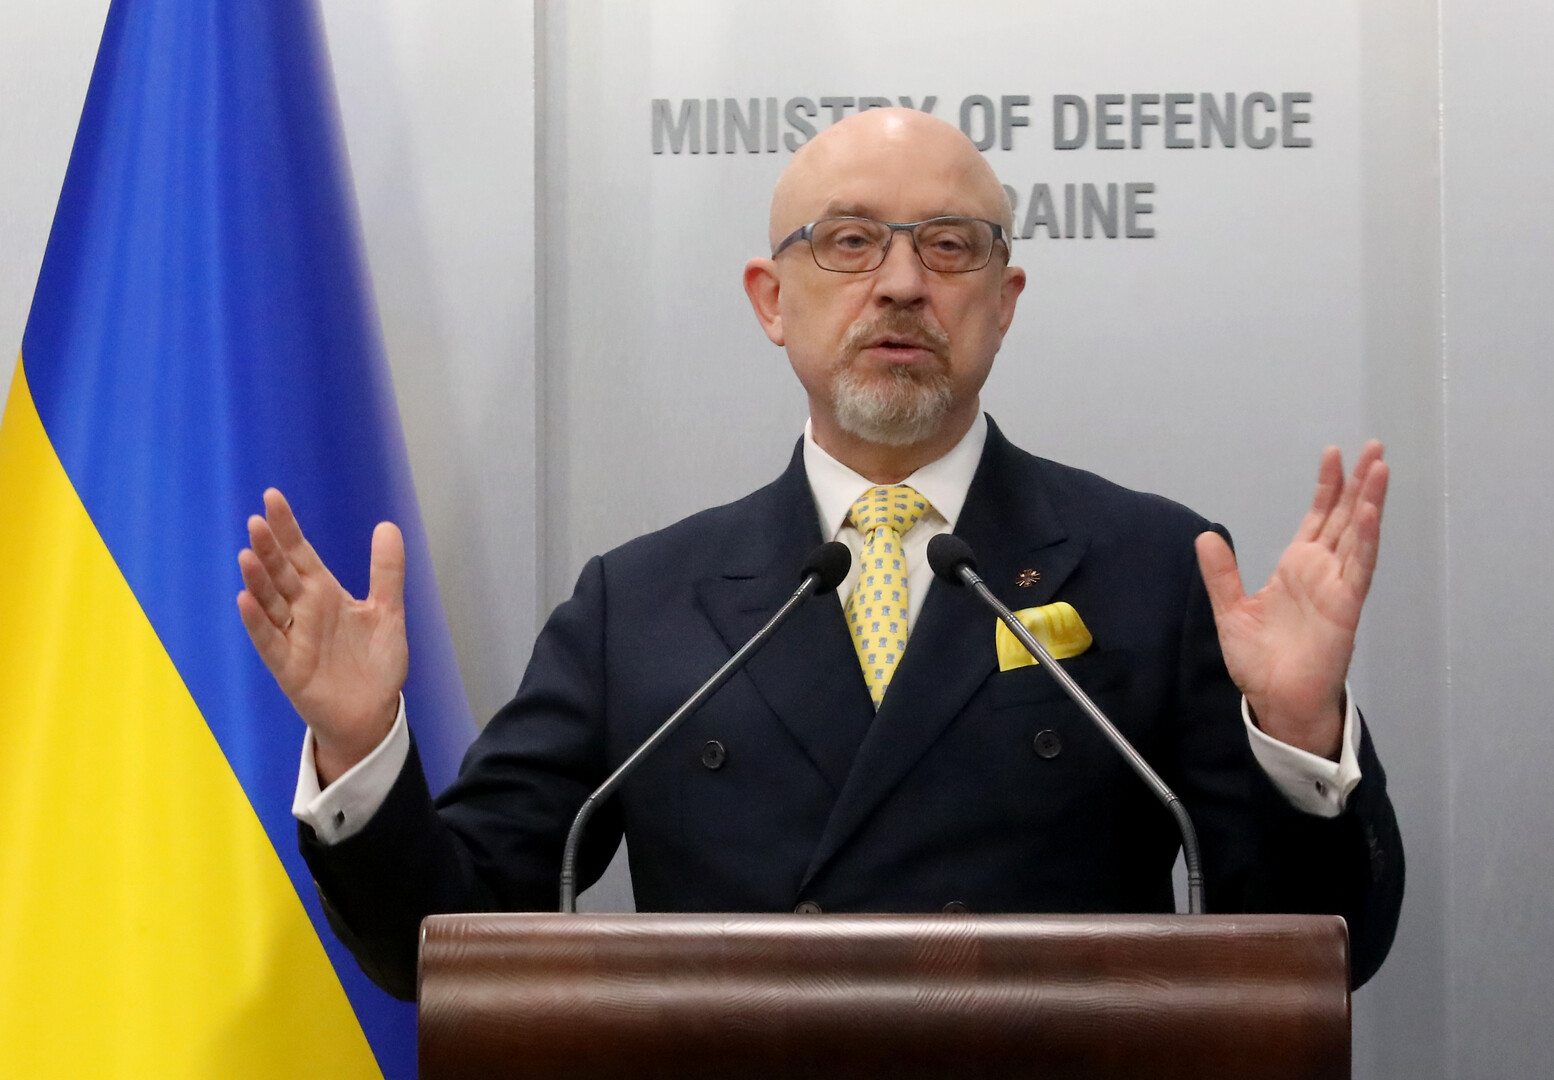 وزير الدفاع الأوكراني: الغرب لم يقرر بعد تسليمنا دبابات وطائرات حديثة